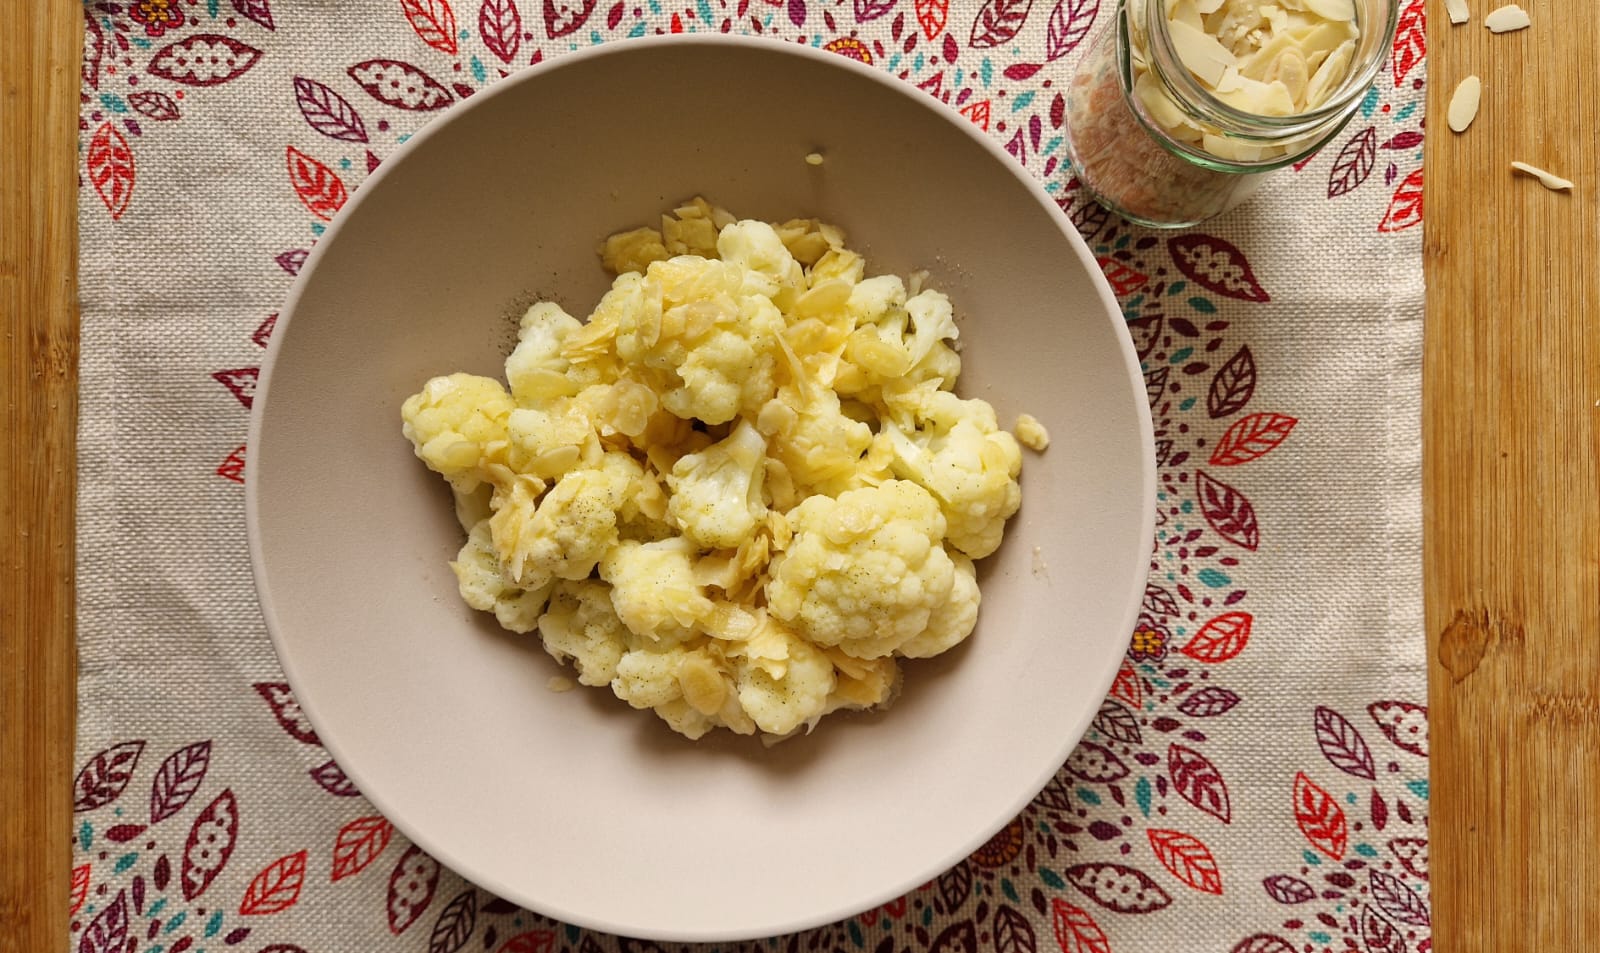 Karfiol mit Butter und gehobelten Mandeln